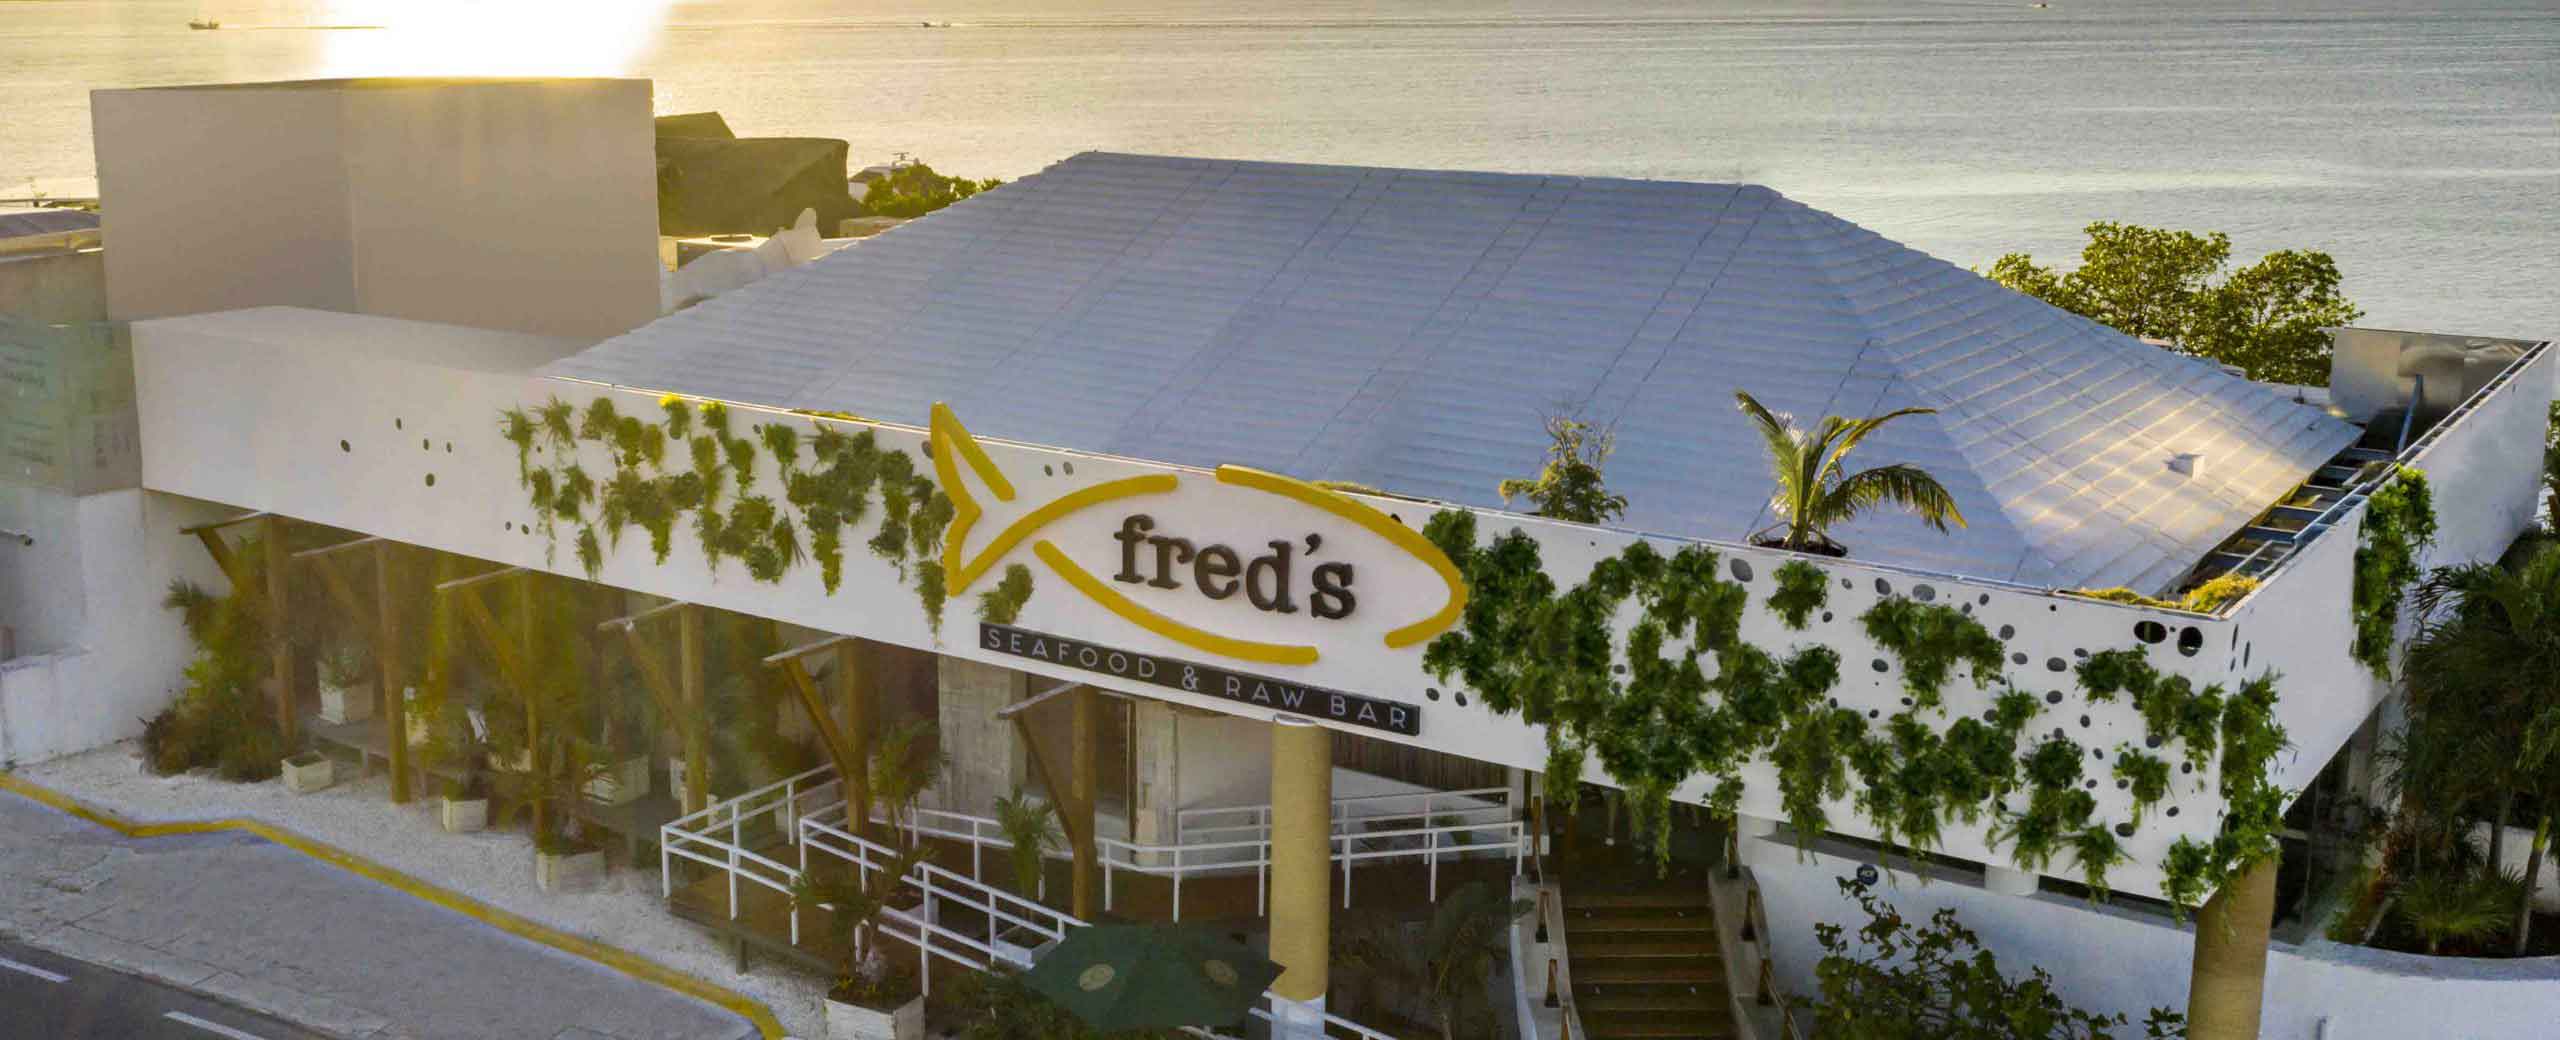 Vista aérea del restaurante Fred's donde se aprecia el frente del lugar y detrás la laguna y el atardecer